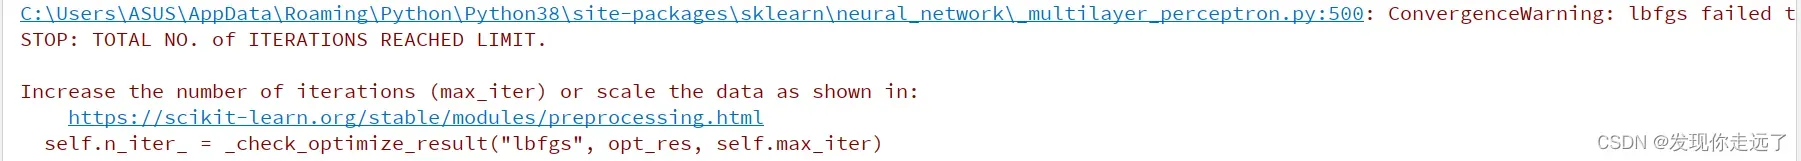 【机器学习】04. 神经网络模型 MLPClassifier分类算法与MLPRegressor回归算法（代码注释，思路推导）